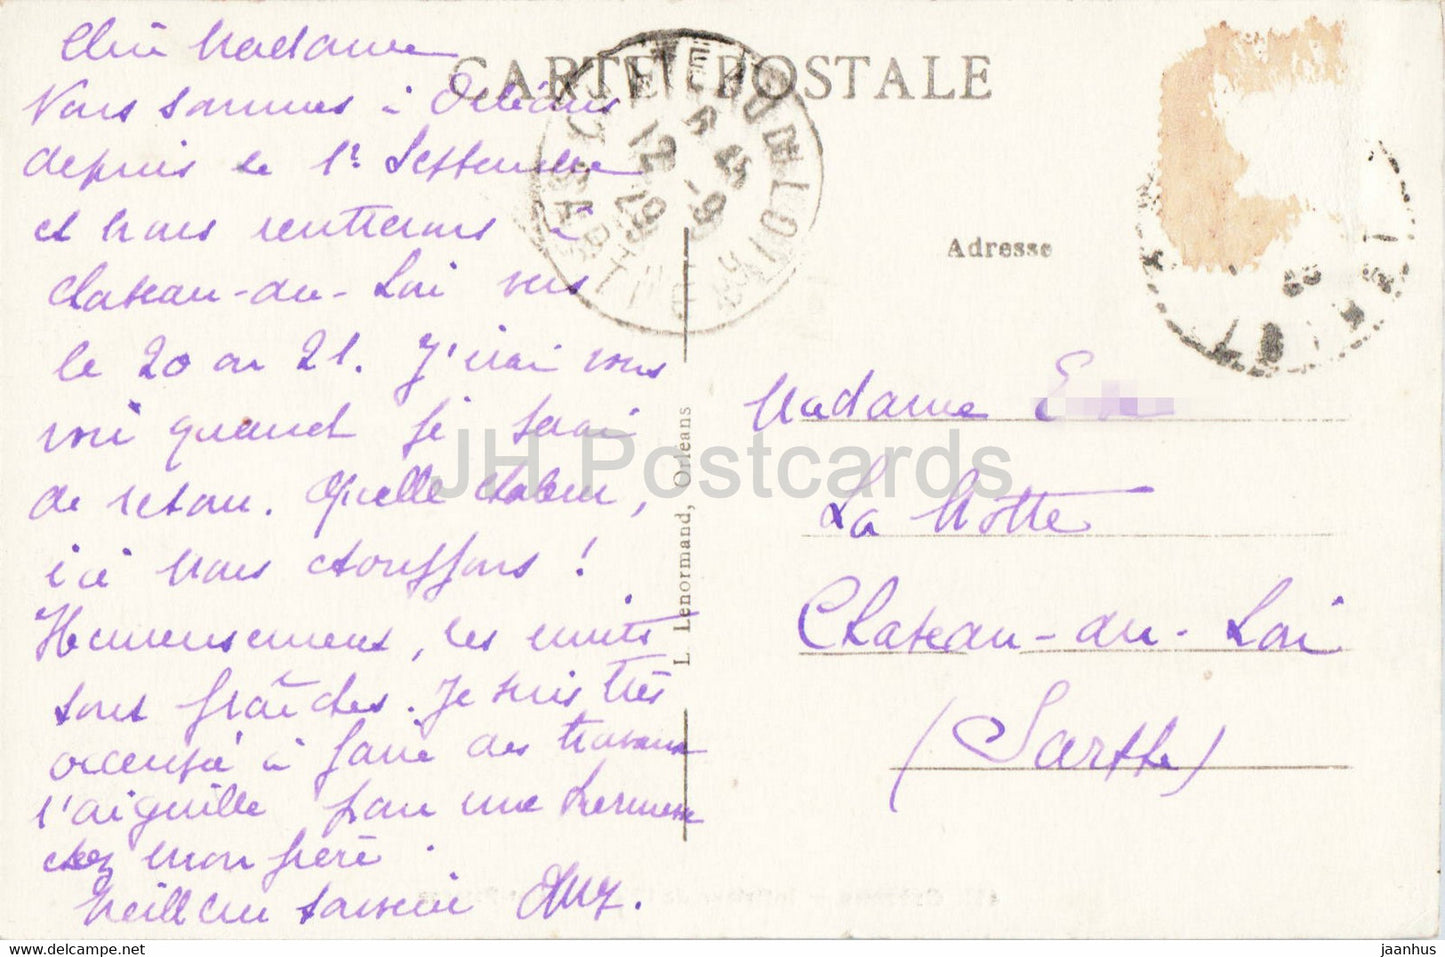 Orléans - Intérieur de l'Eglise Saint Paterne - église - 417 - carte postale ancienne - 1929 - France - utilisé